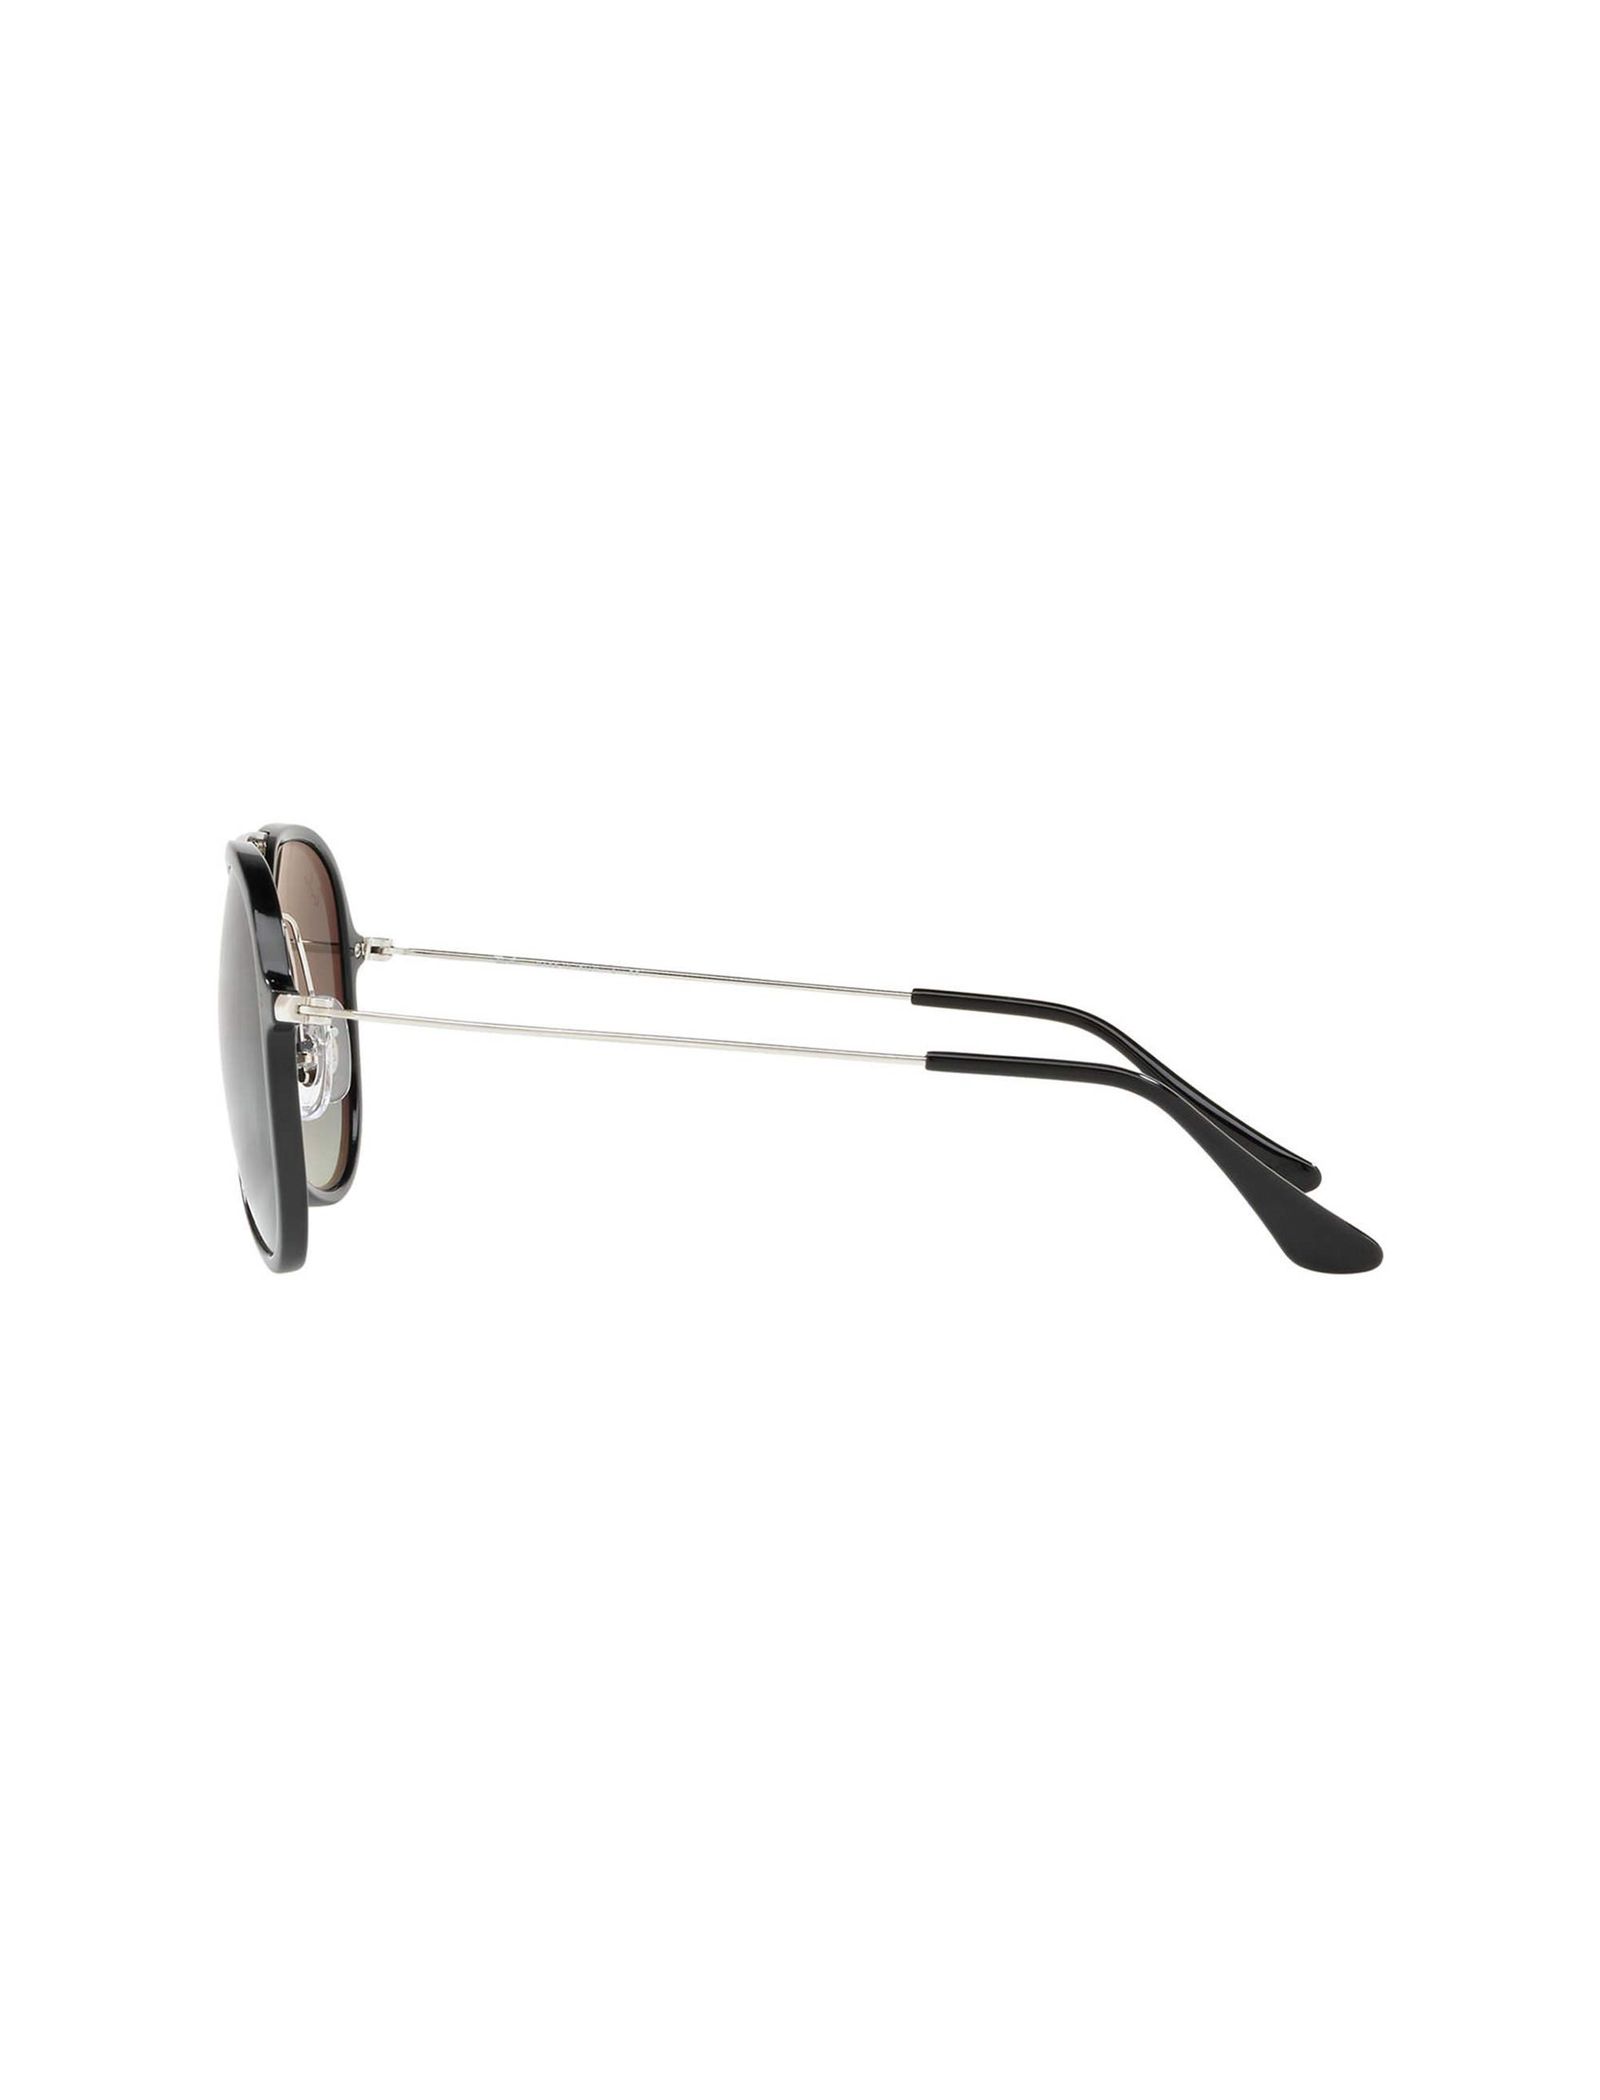 عینک آفتابی خلبانی مردانه - ری بن - مشکي - 5